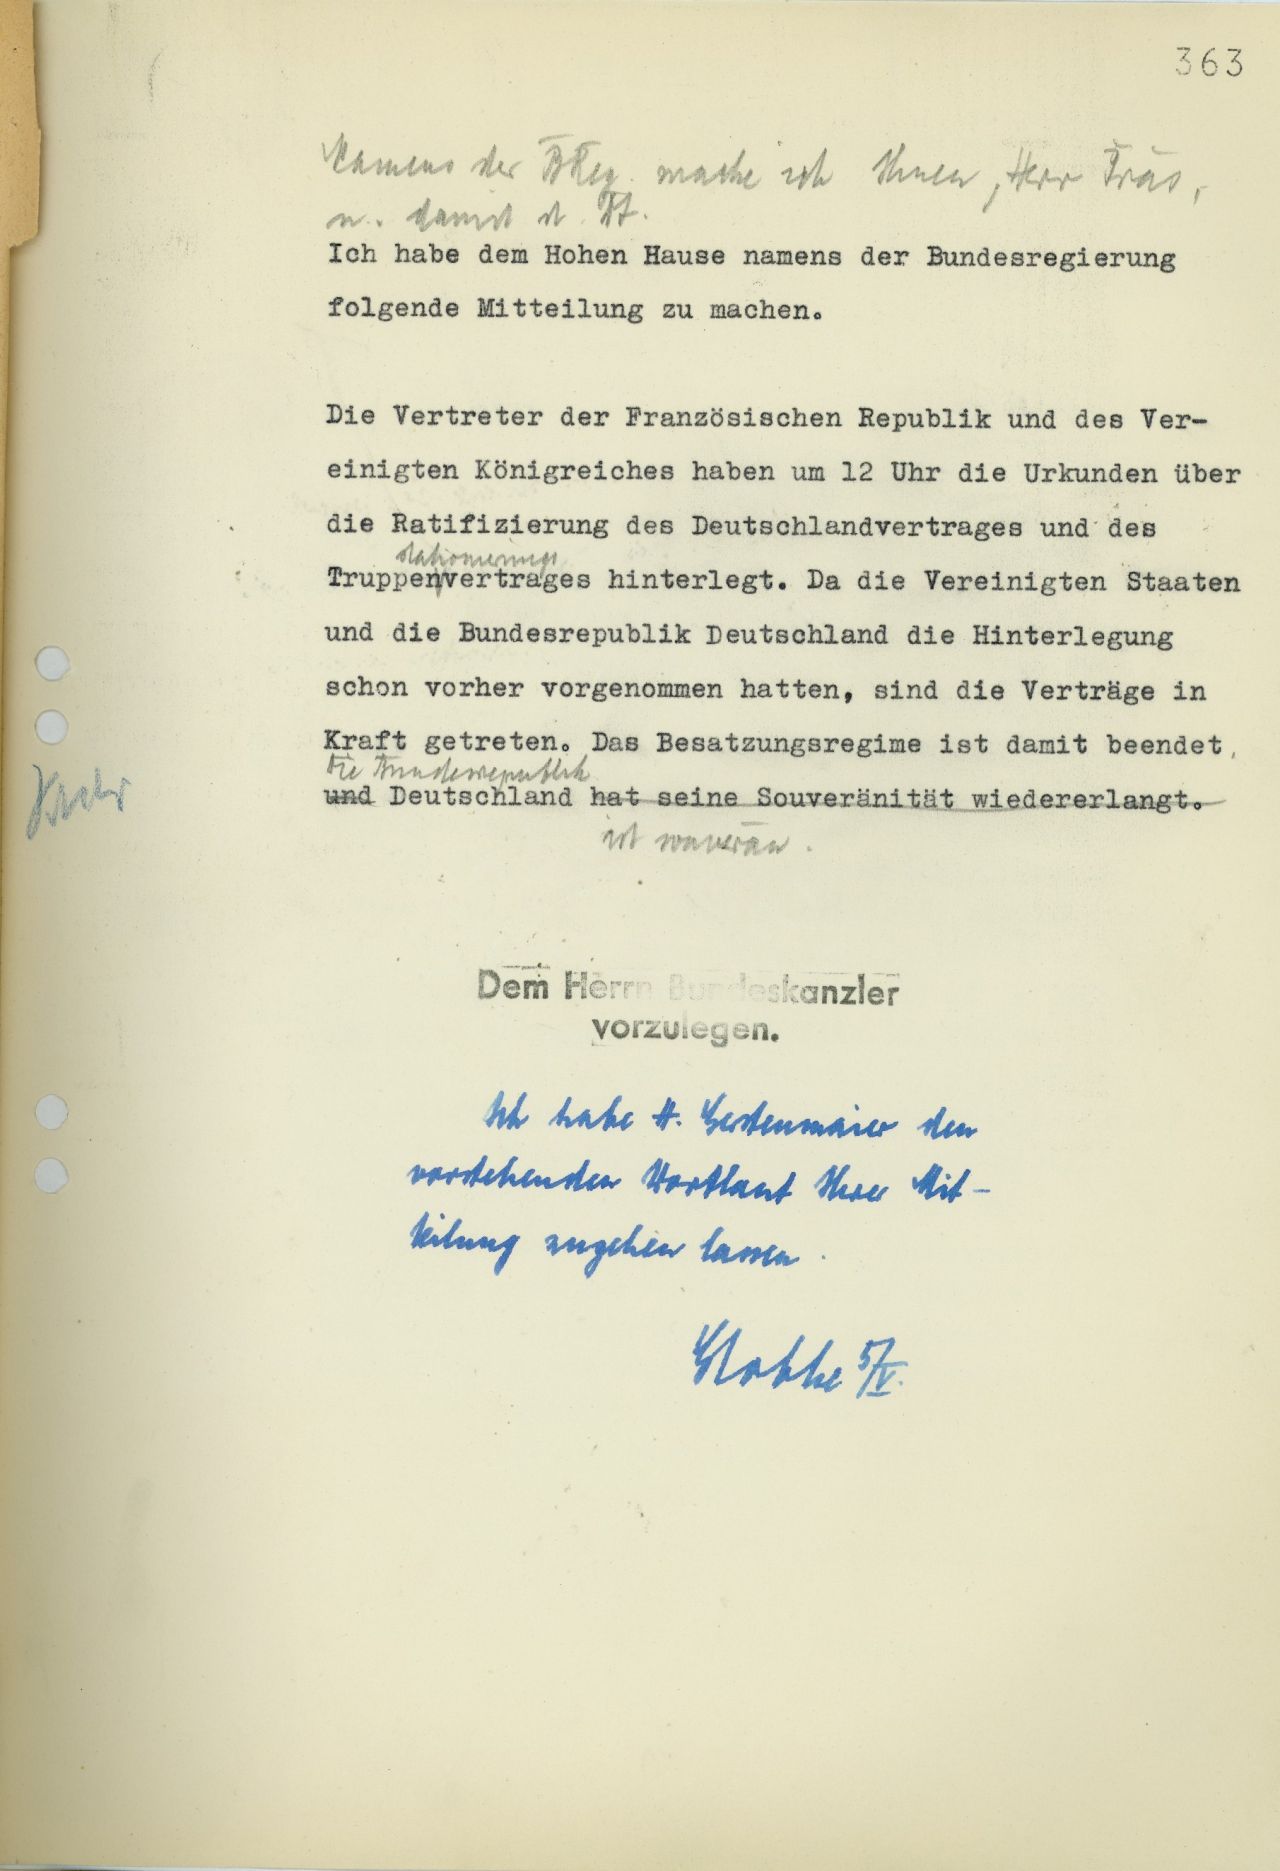 Bundeskanzler Konrad Adenauer informiert im Namen der Bundesregierung den Bundestag am 5. Mai 1955 über das Inkrafttreten der Pariser Verträge und die damit einhergehende Souveränität der Bundesrepublik.